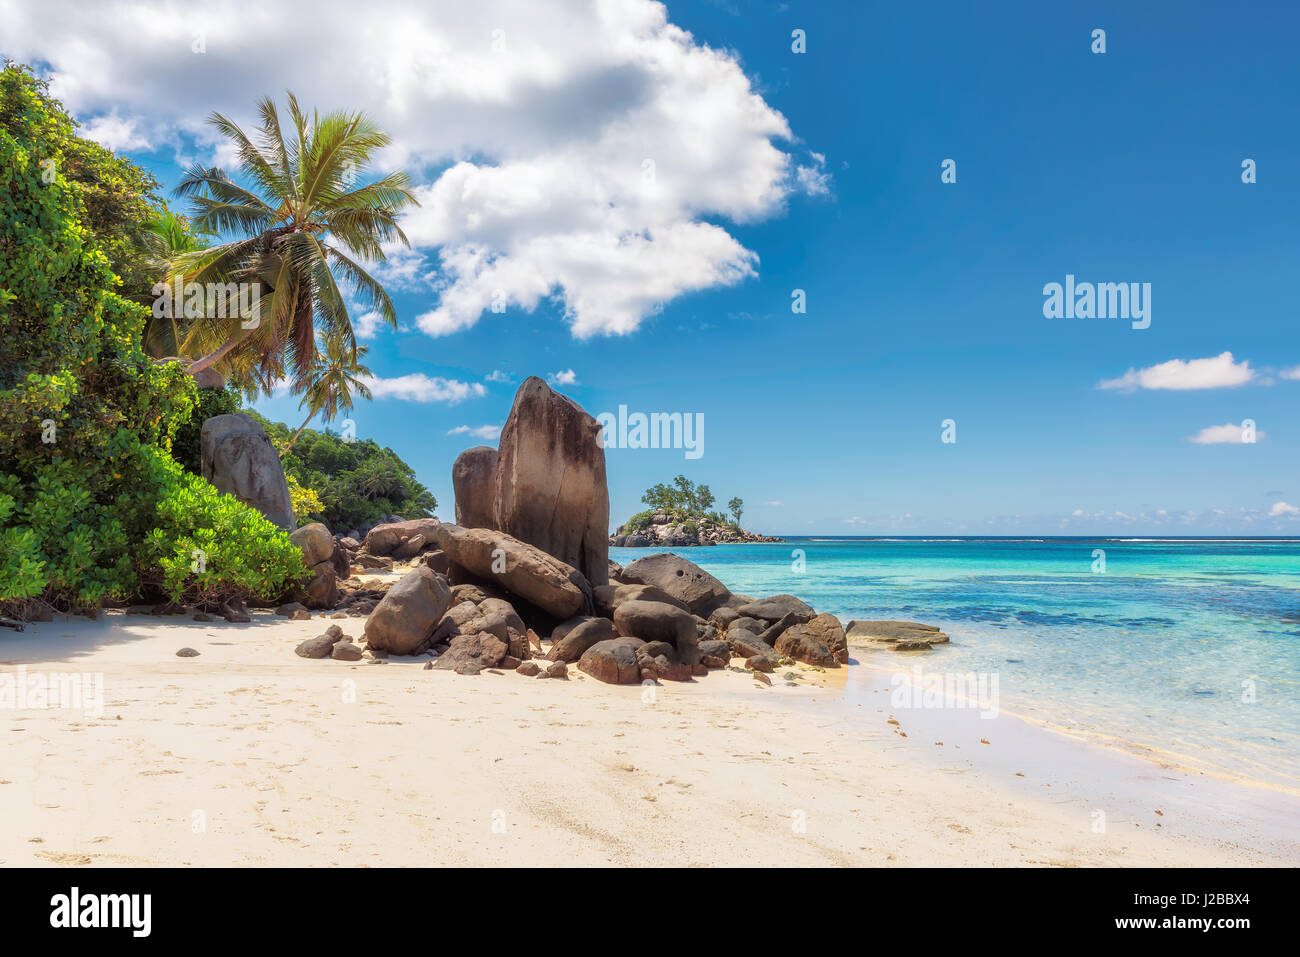 Palmiers et rochers sur une plage de sable blanc, l'île de Mahé, Seychelles Banque D'Images